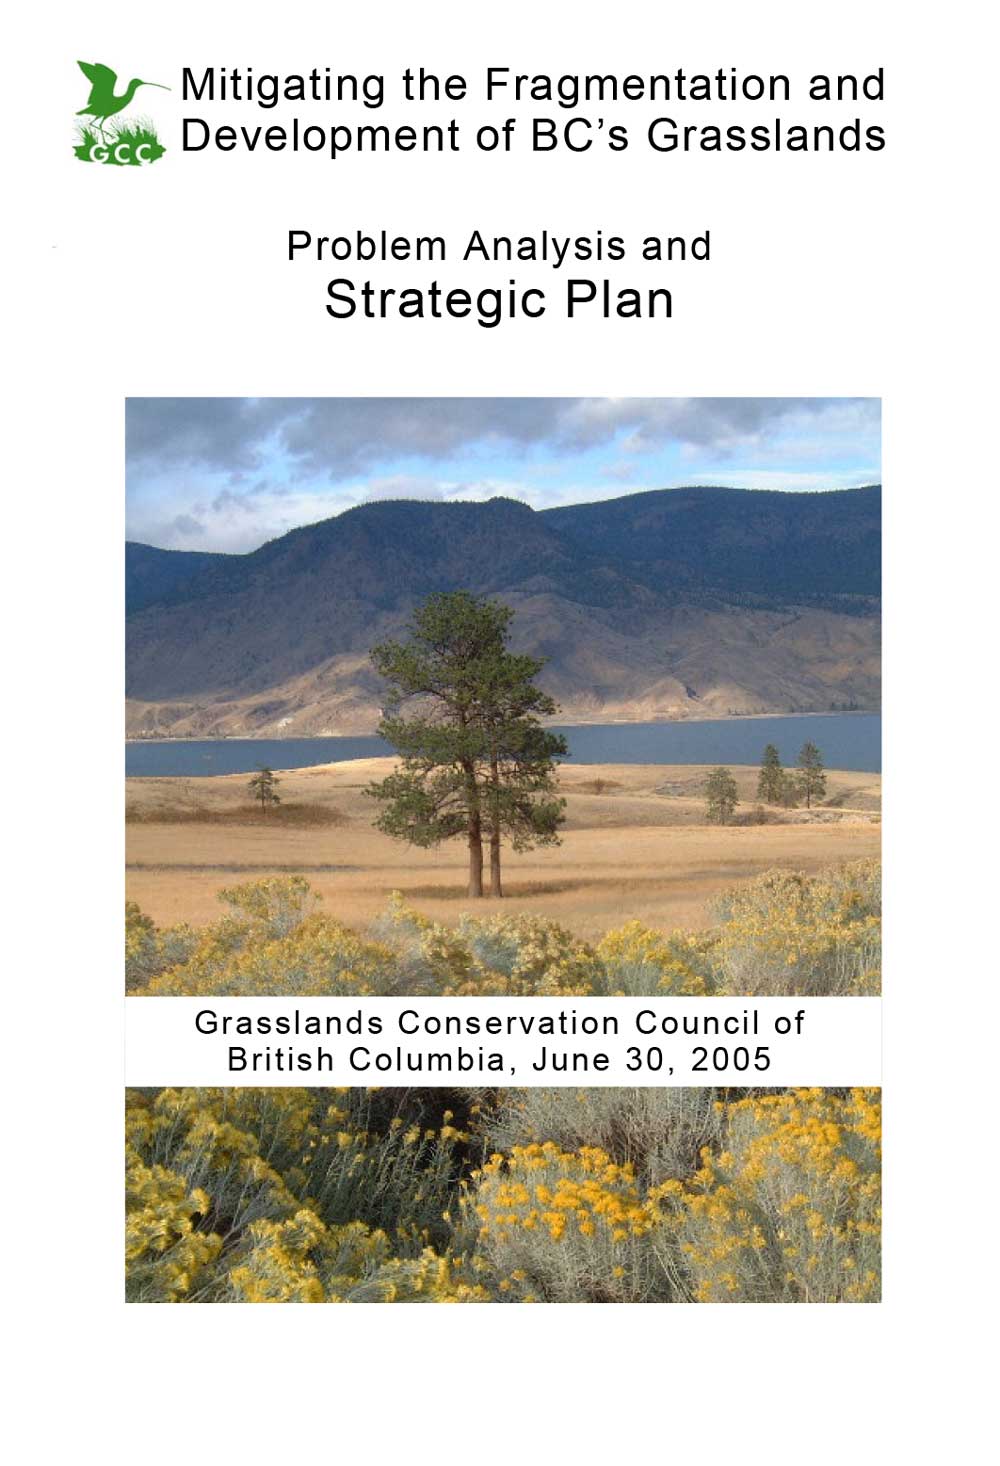 BC Grasslands - Mitigating fragmentation